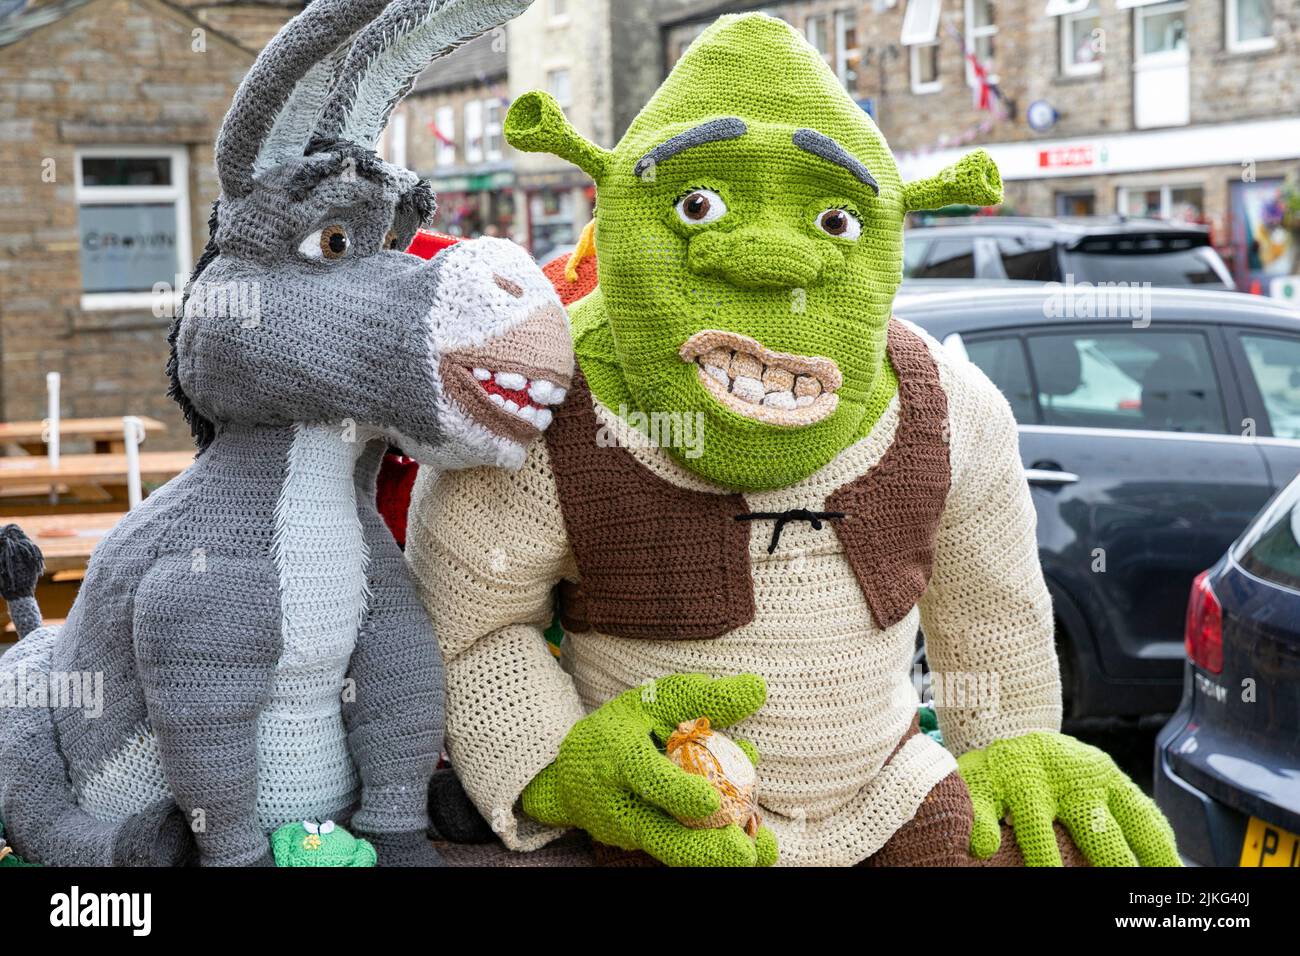 Hawes Village en los Yorkshire Dales, personajes Shrek de punto de tamaño natural expuestos para recaudar fondos benéficos fuera del Board Inn, Yorkshire, Inglaterra Foto de stock